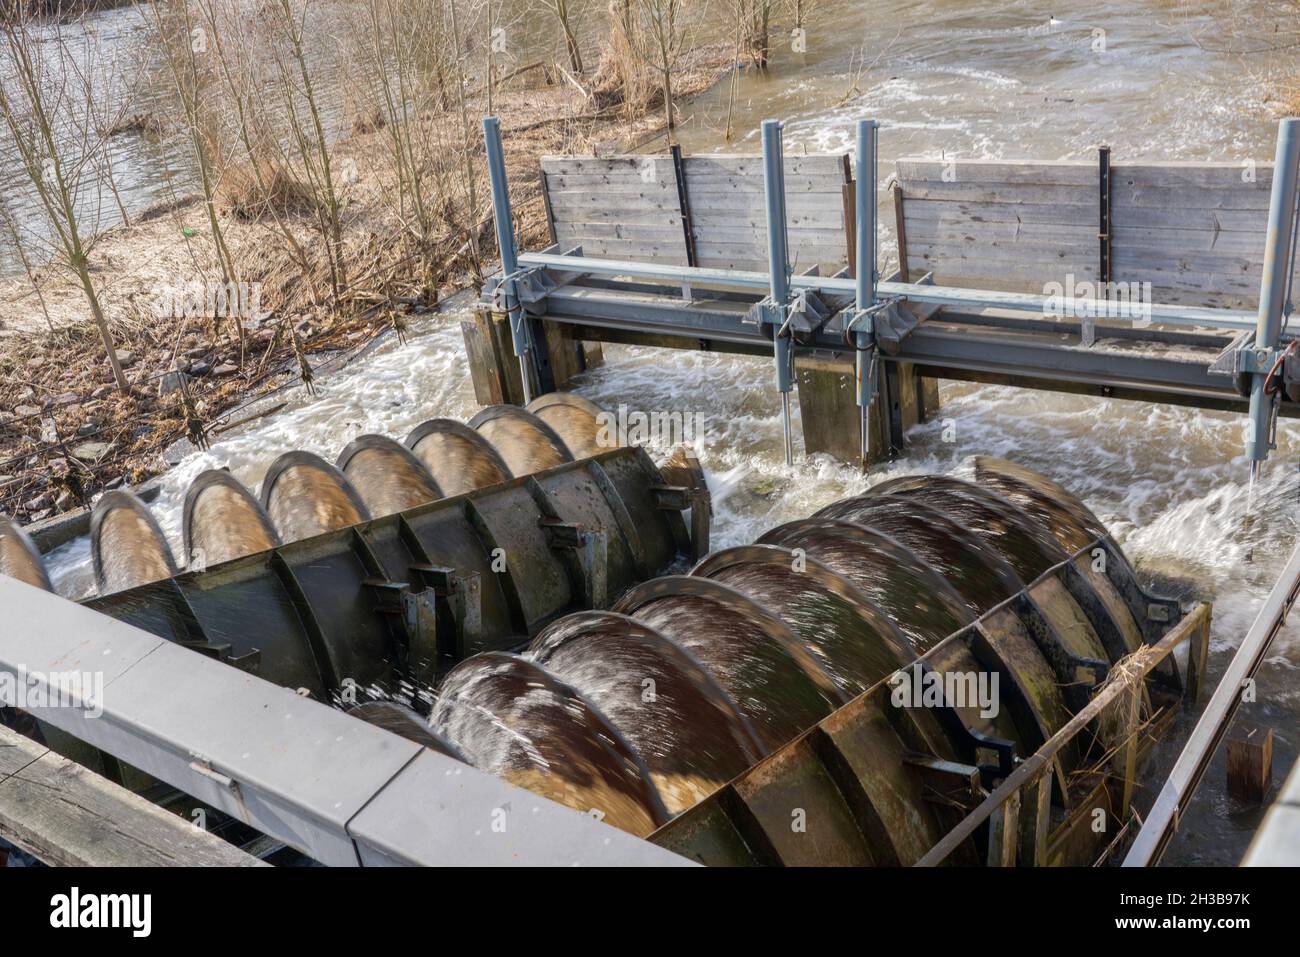 Une turbine à vis dans une petite centrale hydroélectrique, River Werra, Hannoversch Münden, Basse-Saxe, Allemagne,Europe Banque D'Images